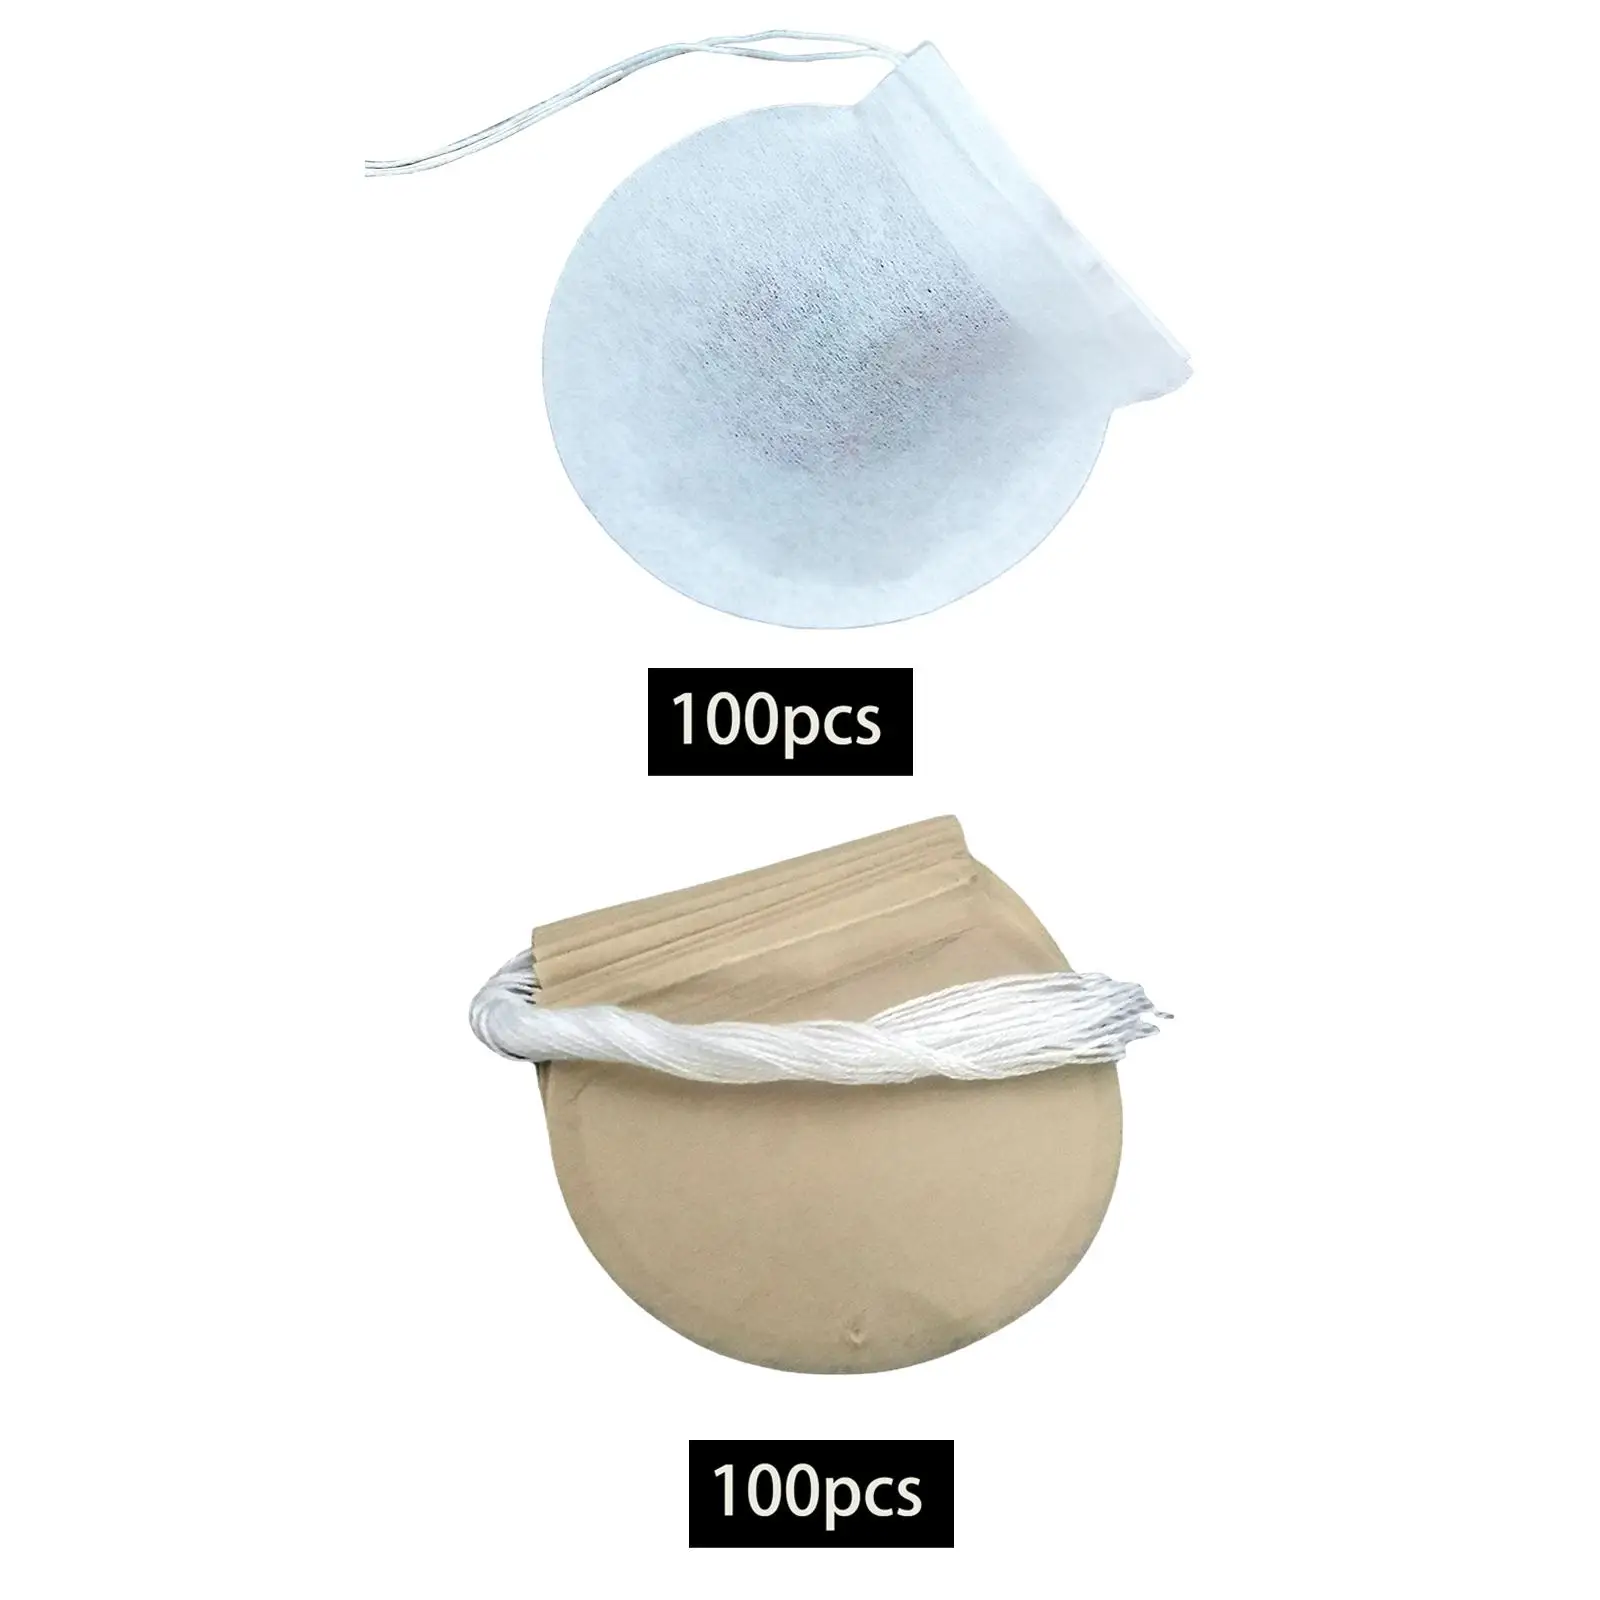 100Pcs Empty Tea Filter Bag Loose Tea Infuser Drawstring Non Woven Fabric